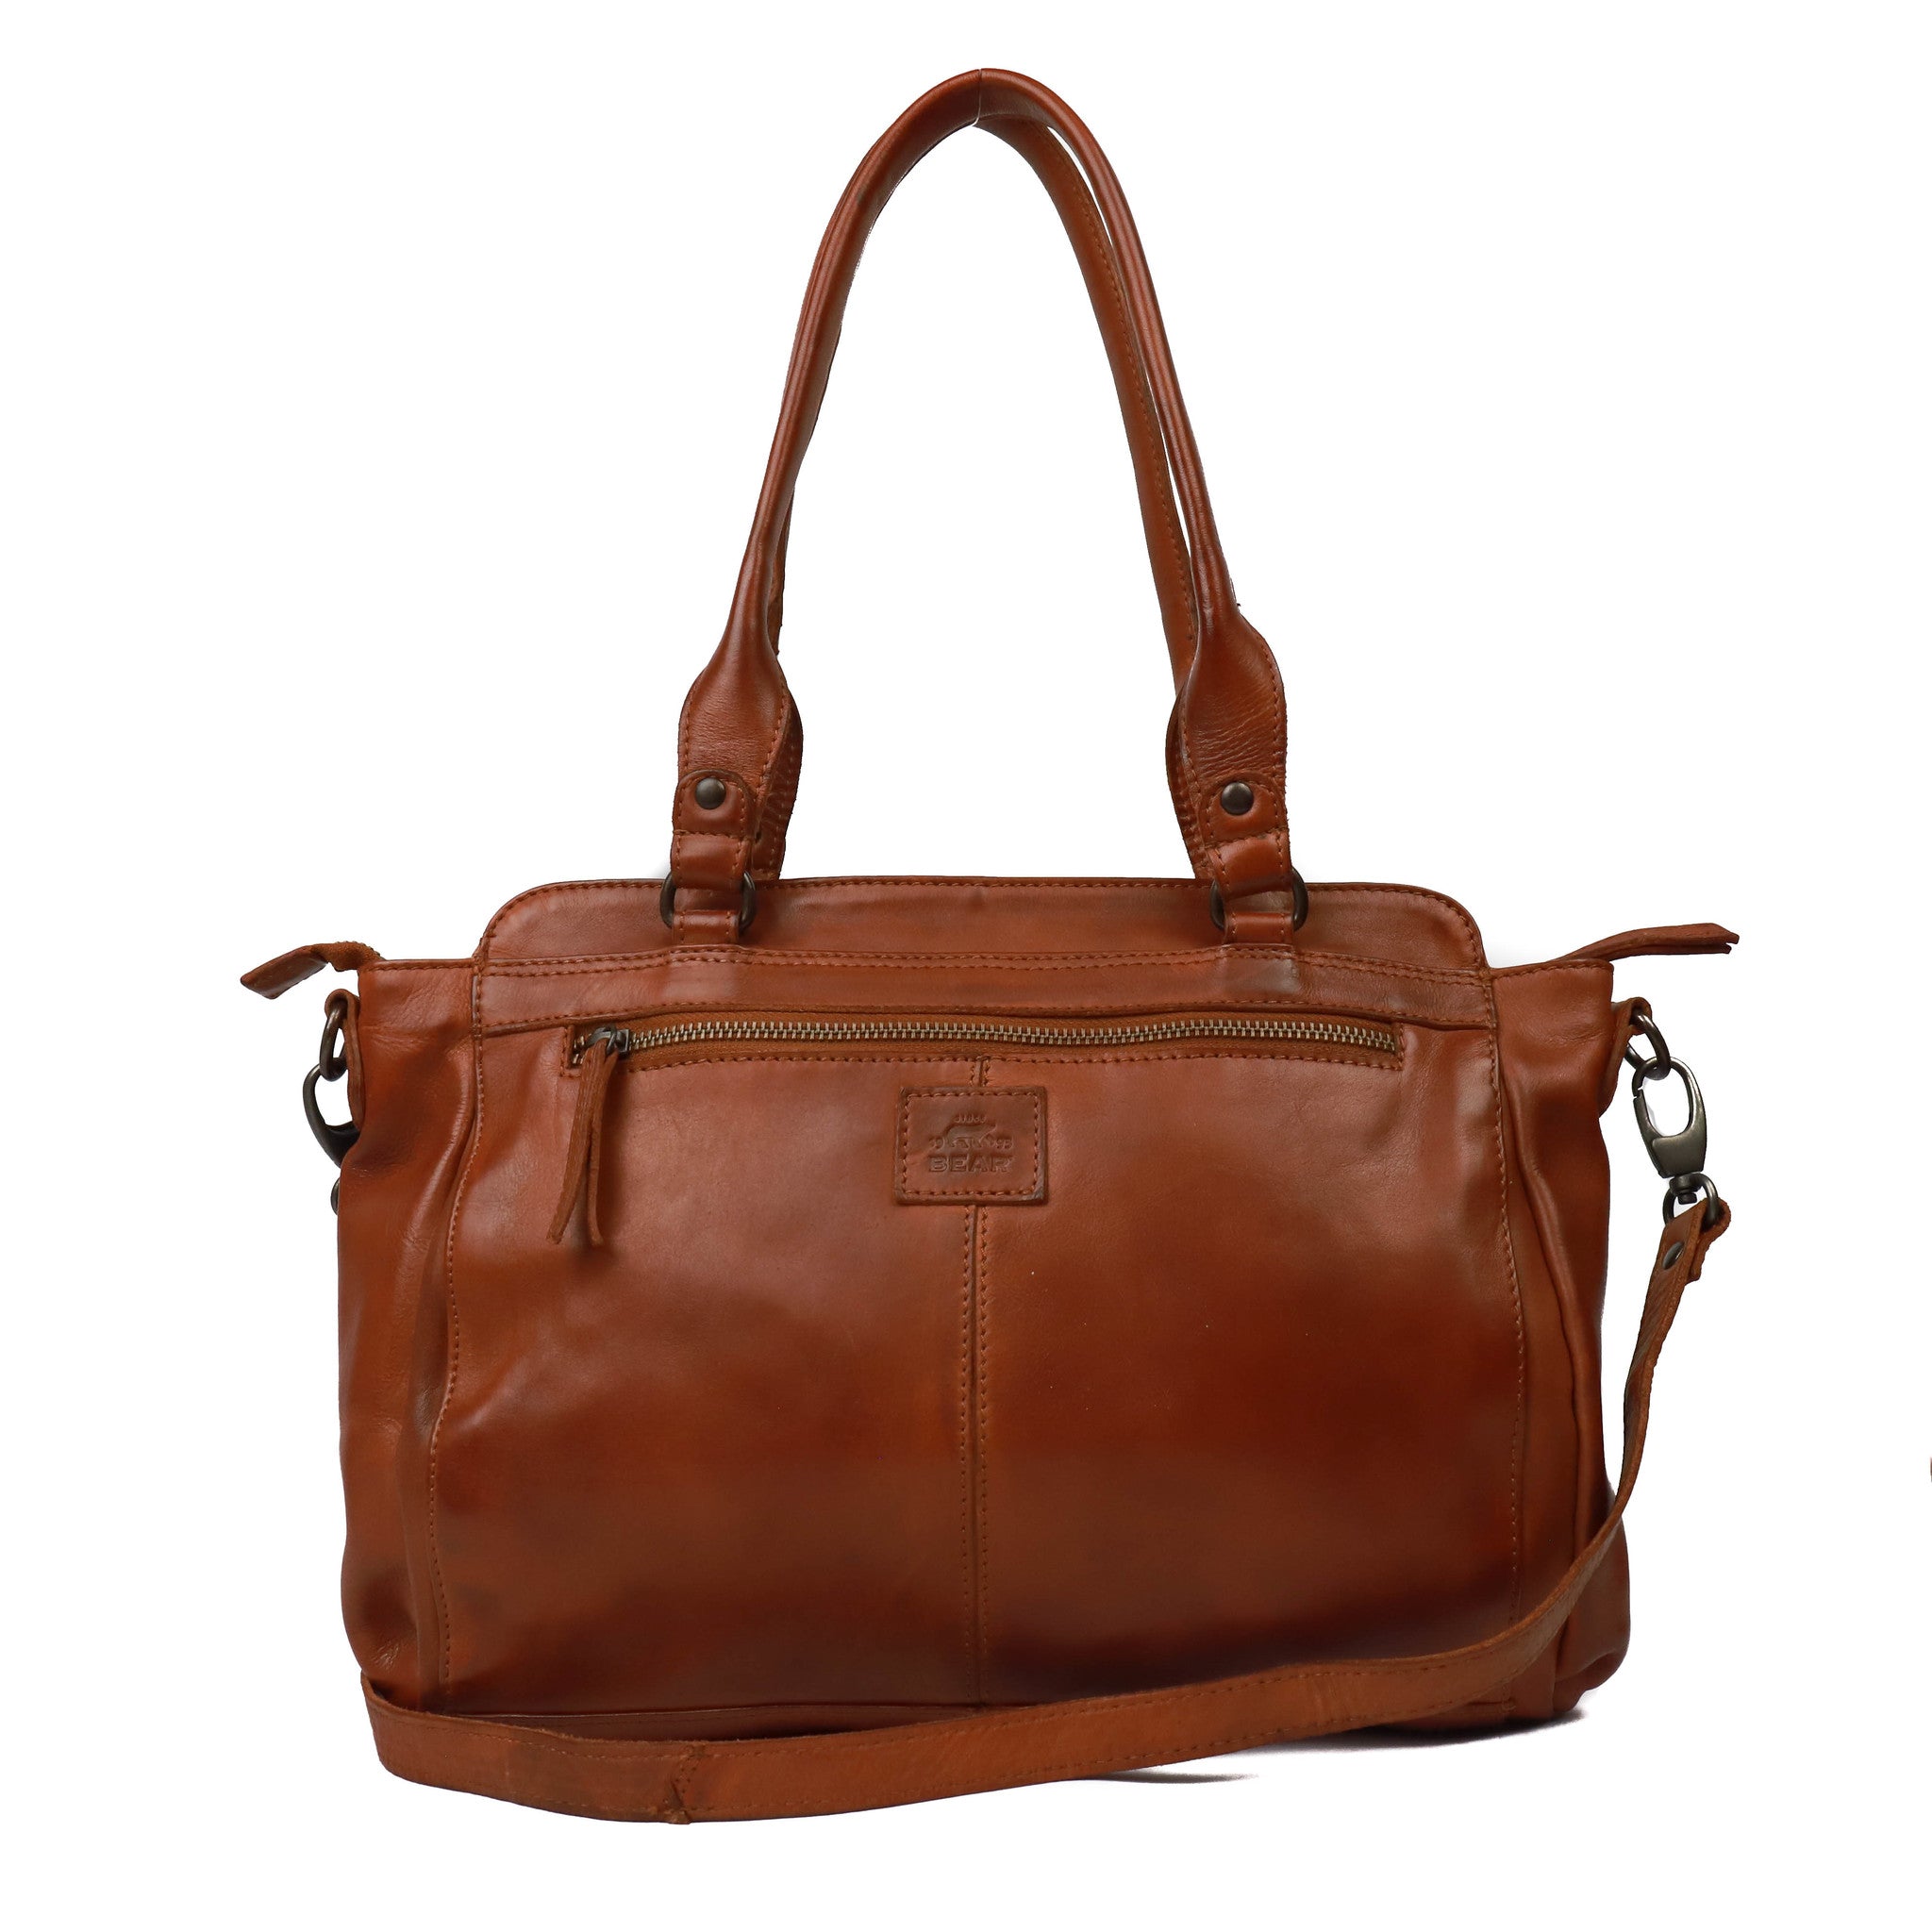 Hand/shoulder bag 'Donna' cognac - CL 41573